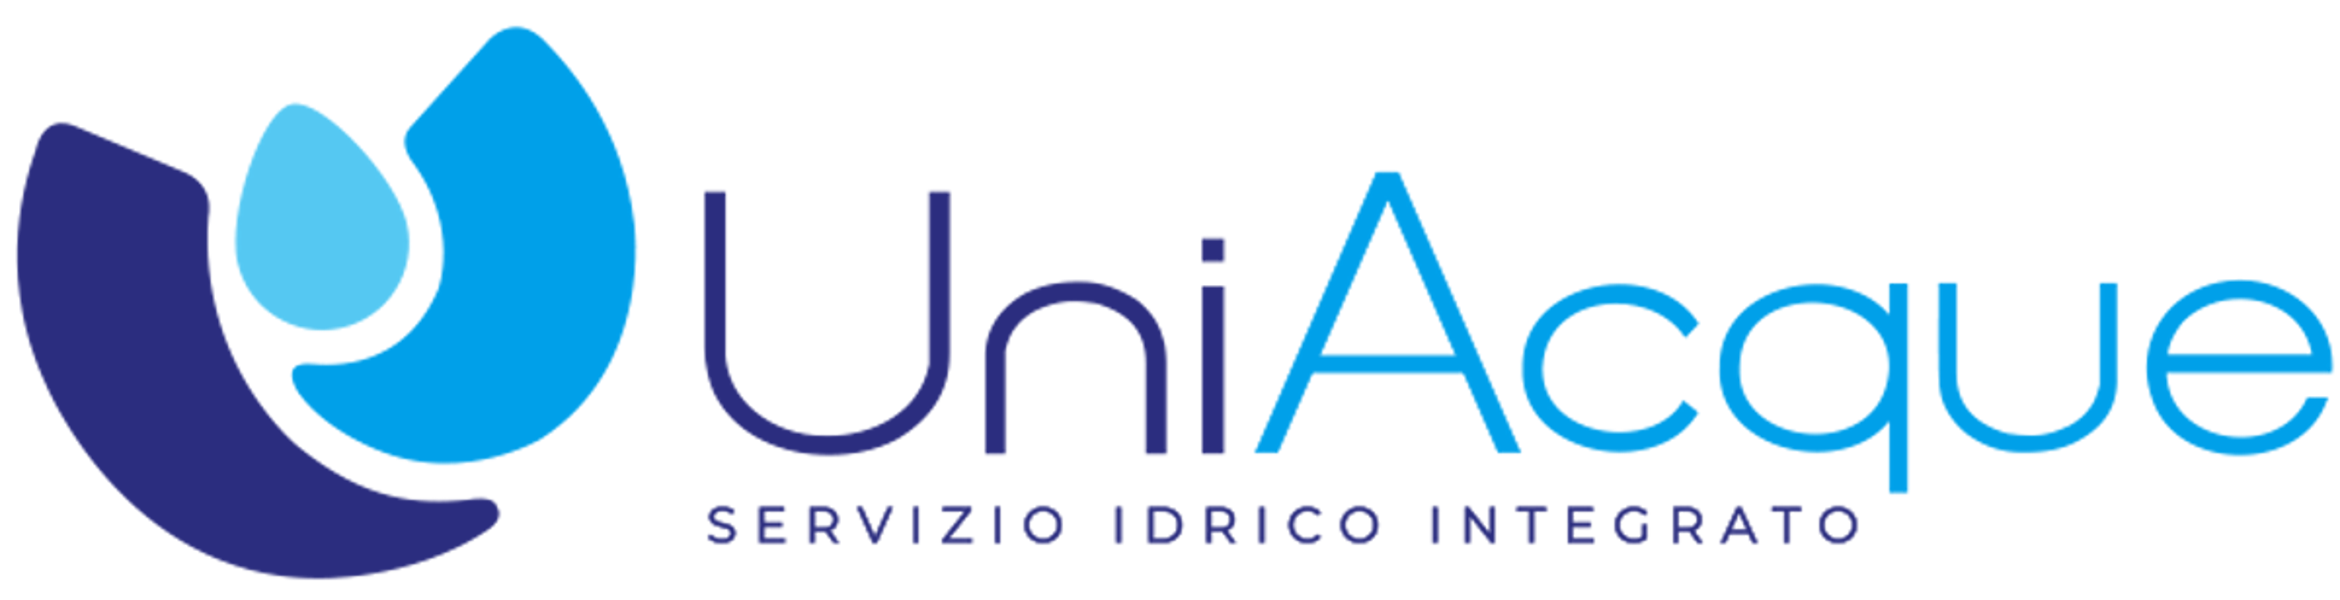 Logo-Uniacque